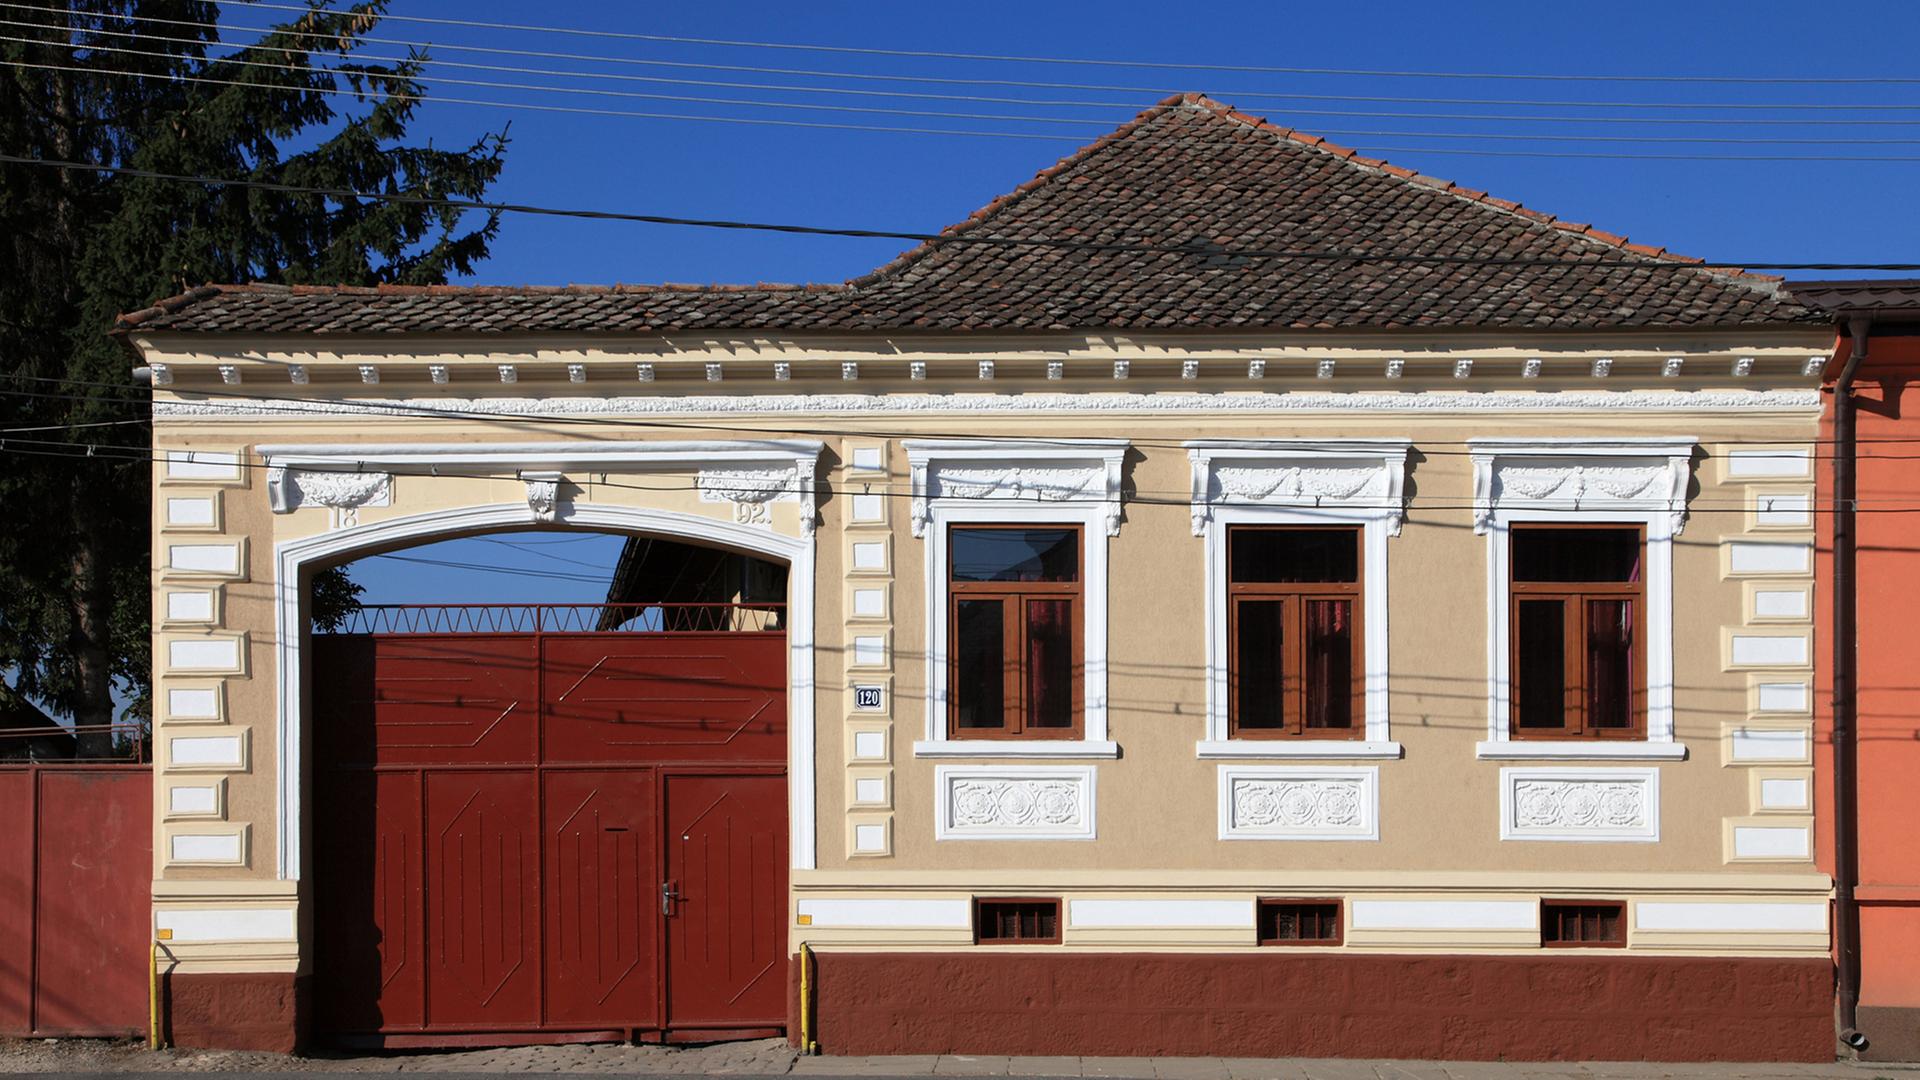 Restauriertes Haus an einer Straße in Codlea (Zeiden) in Siebenbürgen in Rumänien, aufgenommen 2011.